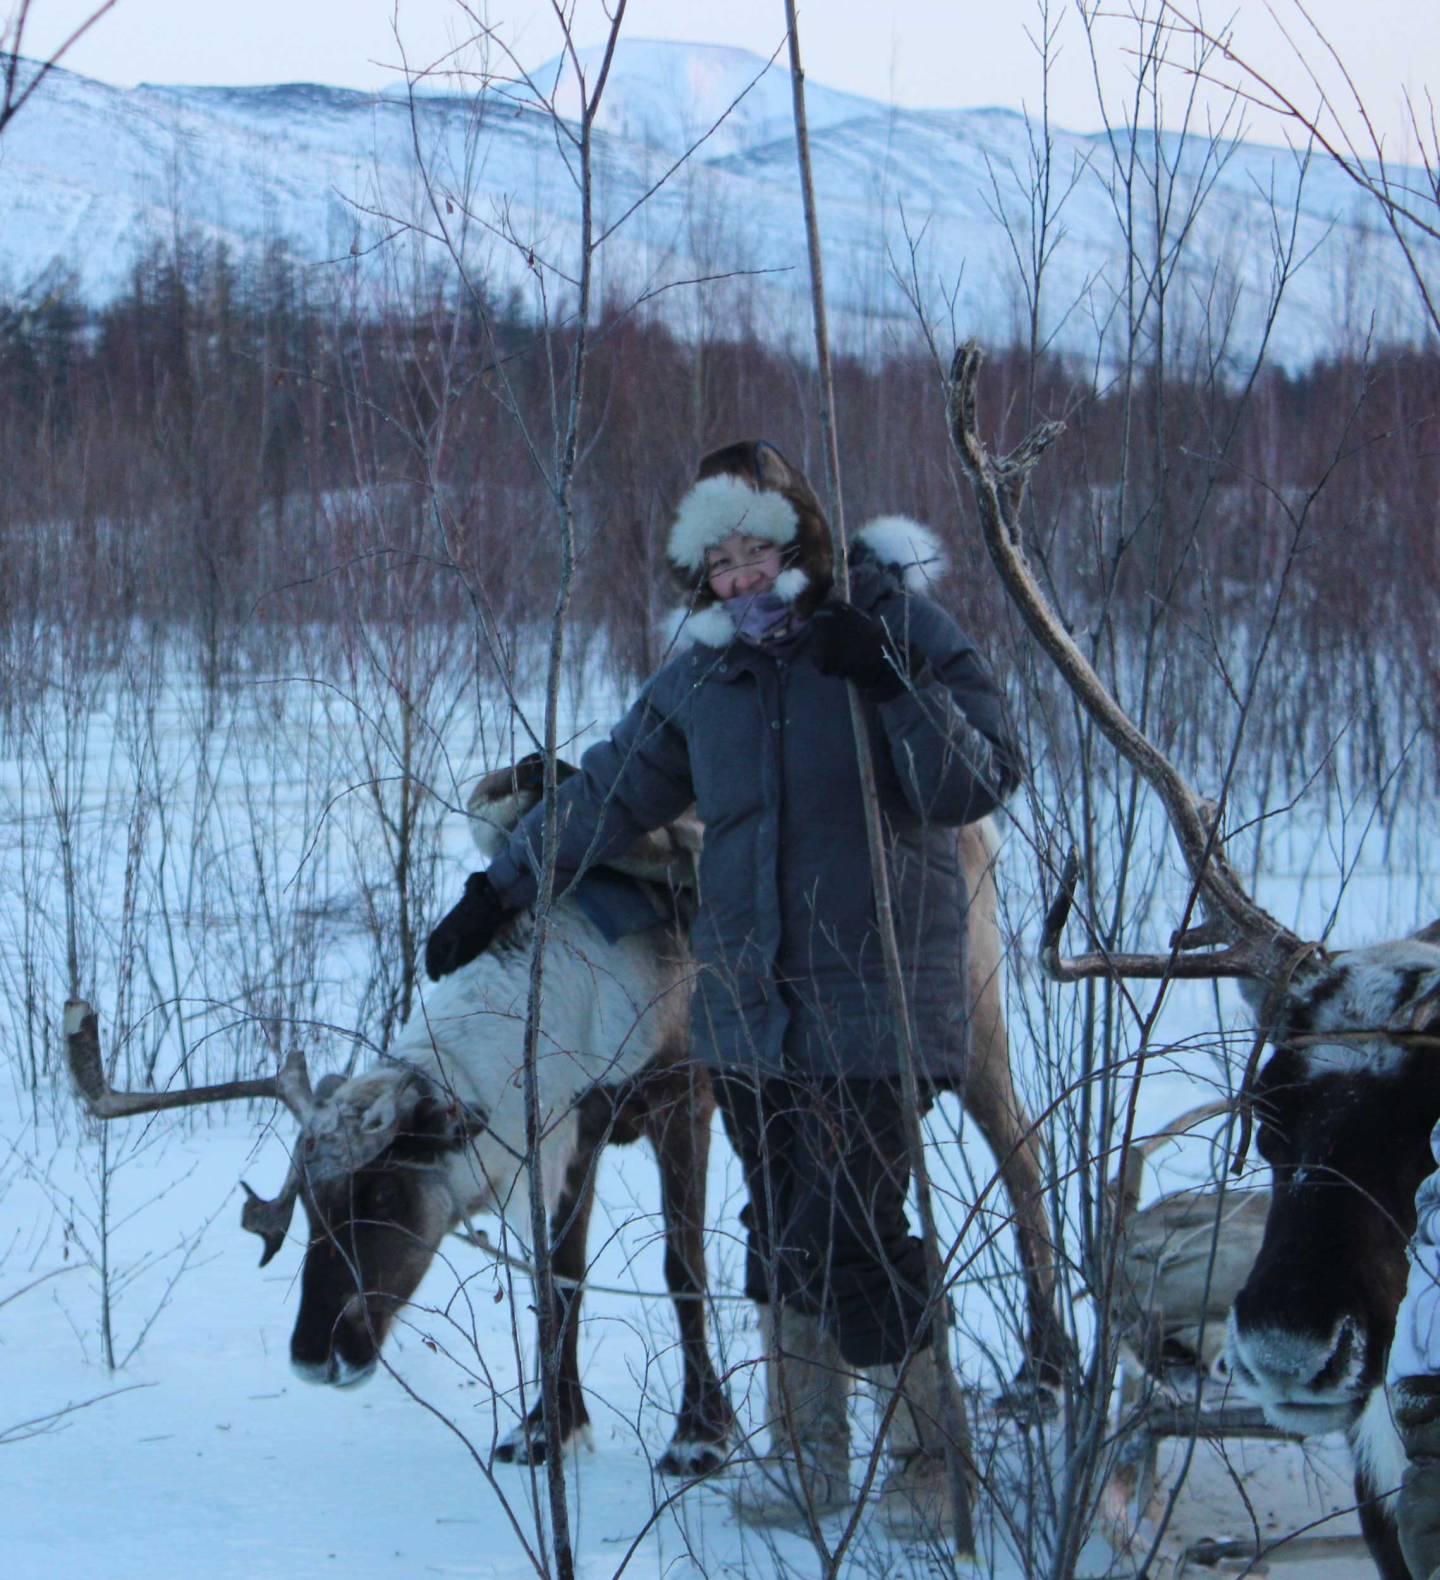 Ulturgasheva among the reindeer